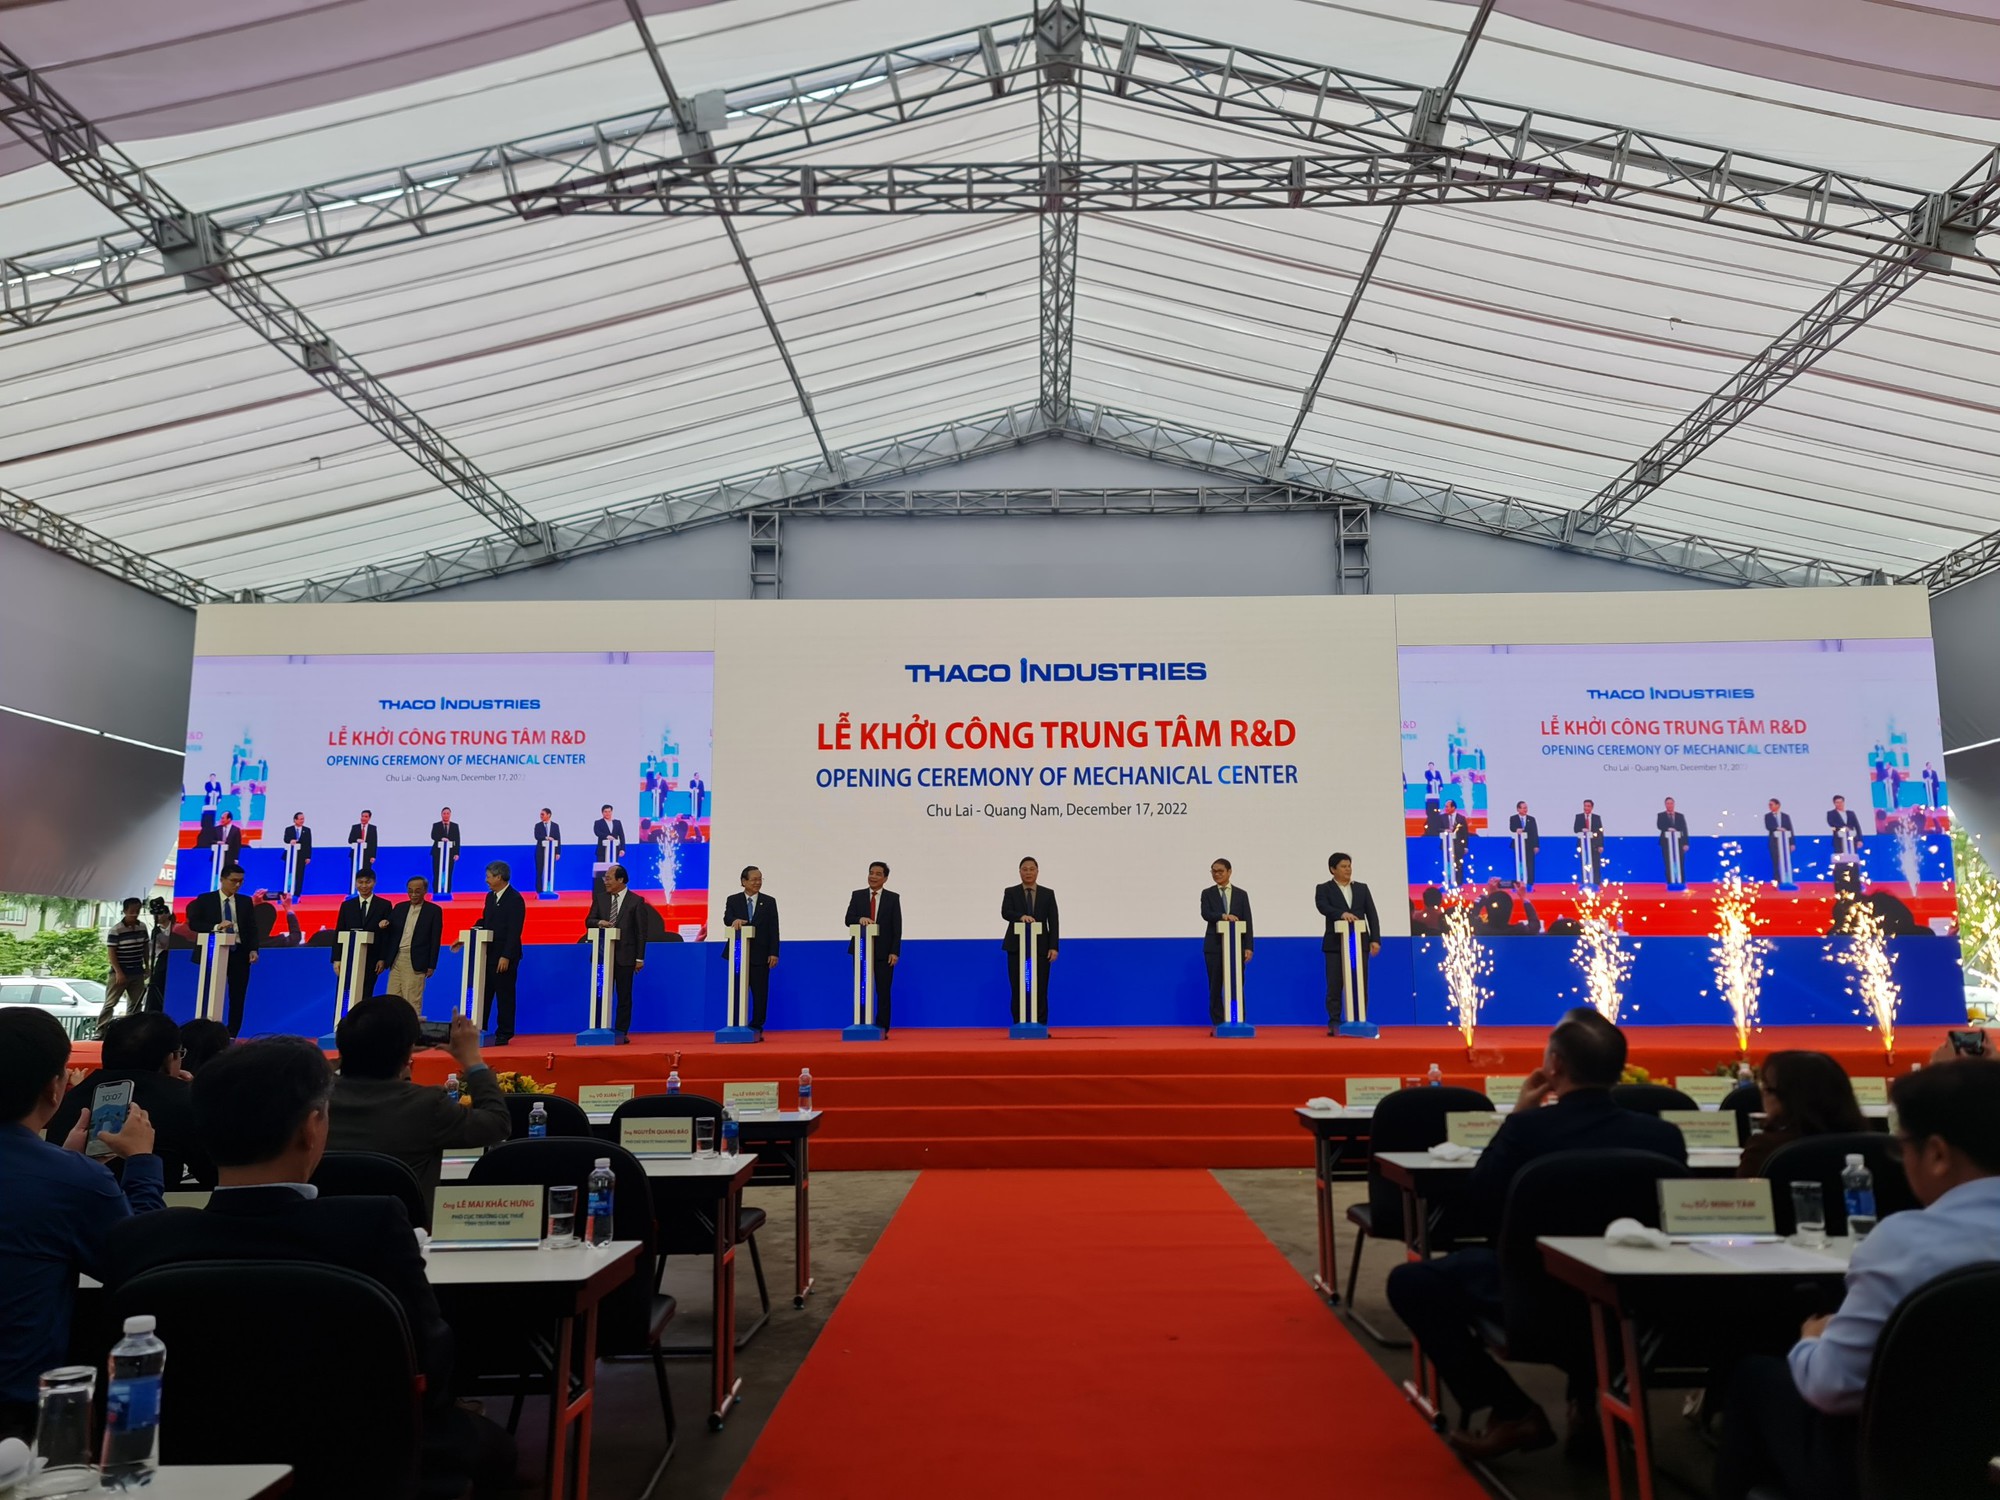 Tỷ phú Trần Bá Dương thành lập Công ty Tập đoàn Công nghiệp Trường Hải - Thaco Industries vốn đầu tư hơn 550 triệu USD - Ảnh 1.